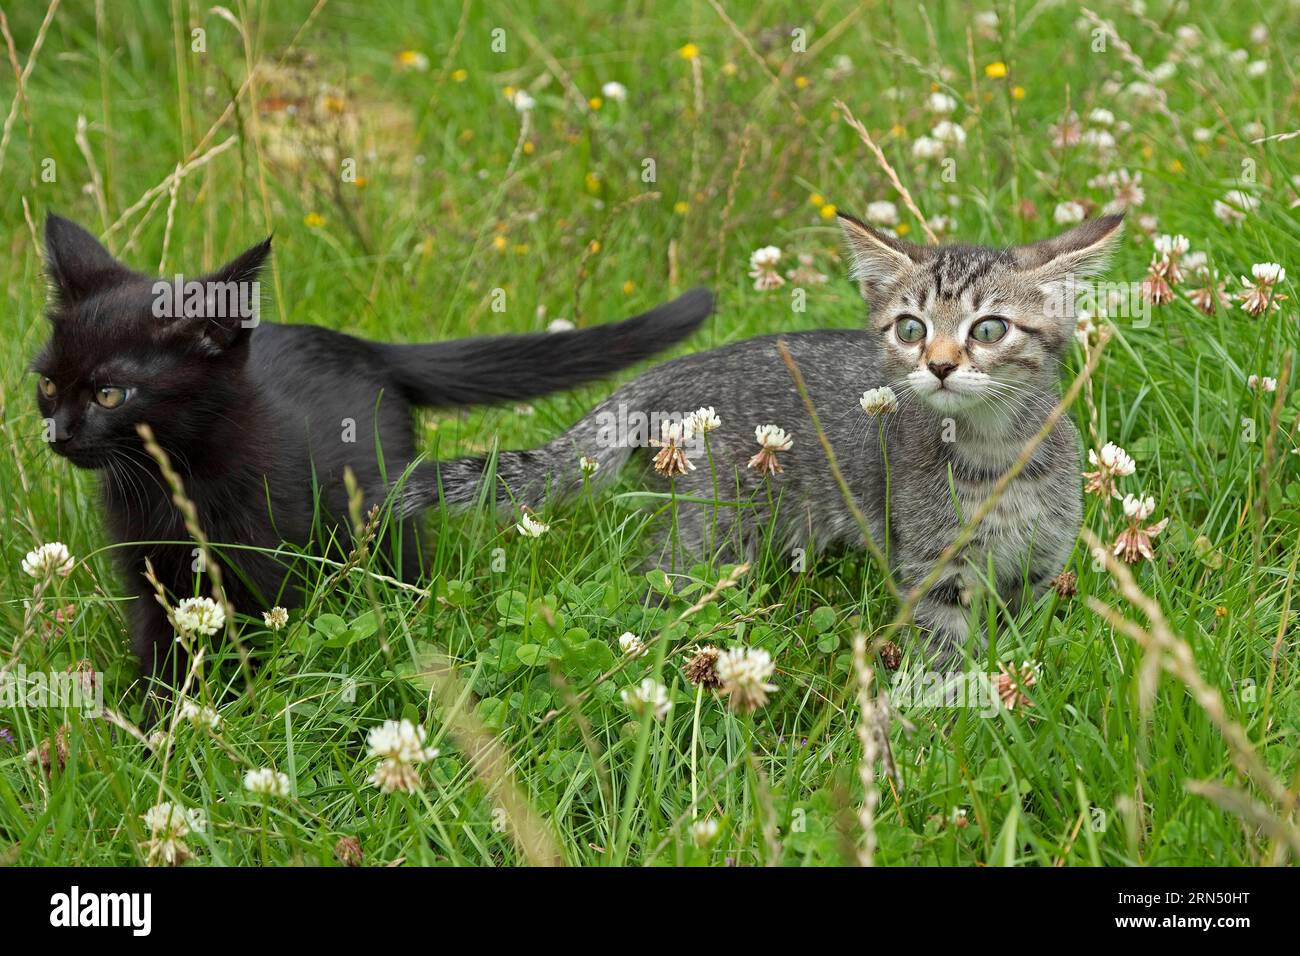 Deux chatons de neuf semaines assis ensemble dans l'herbe, Allemagne Banque D'Images